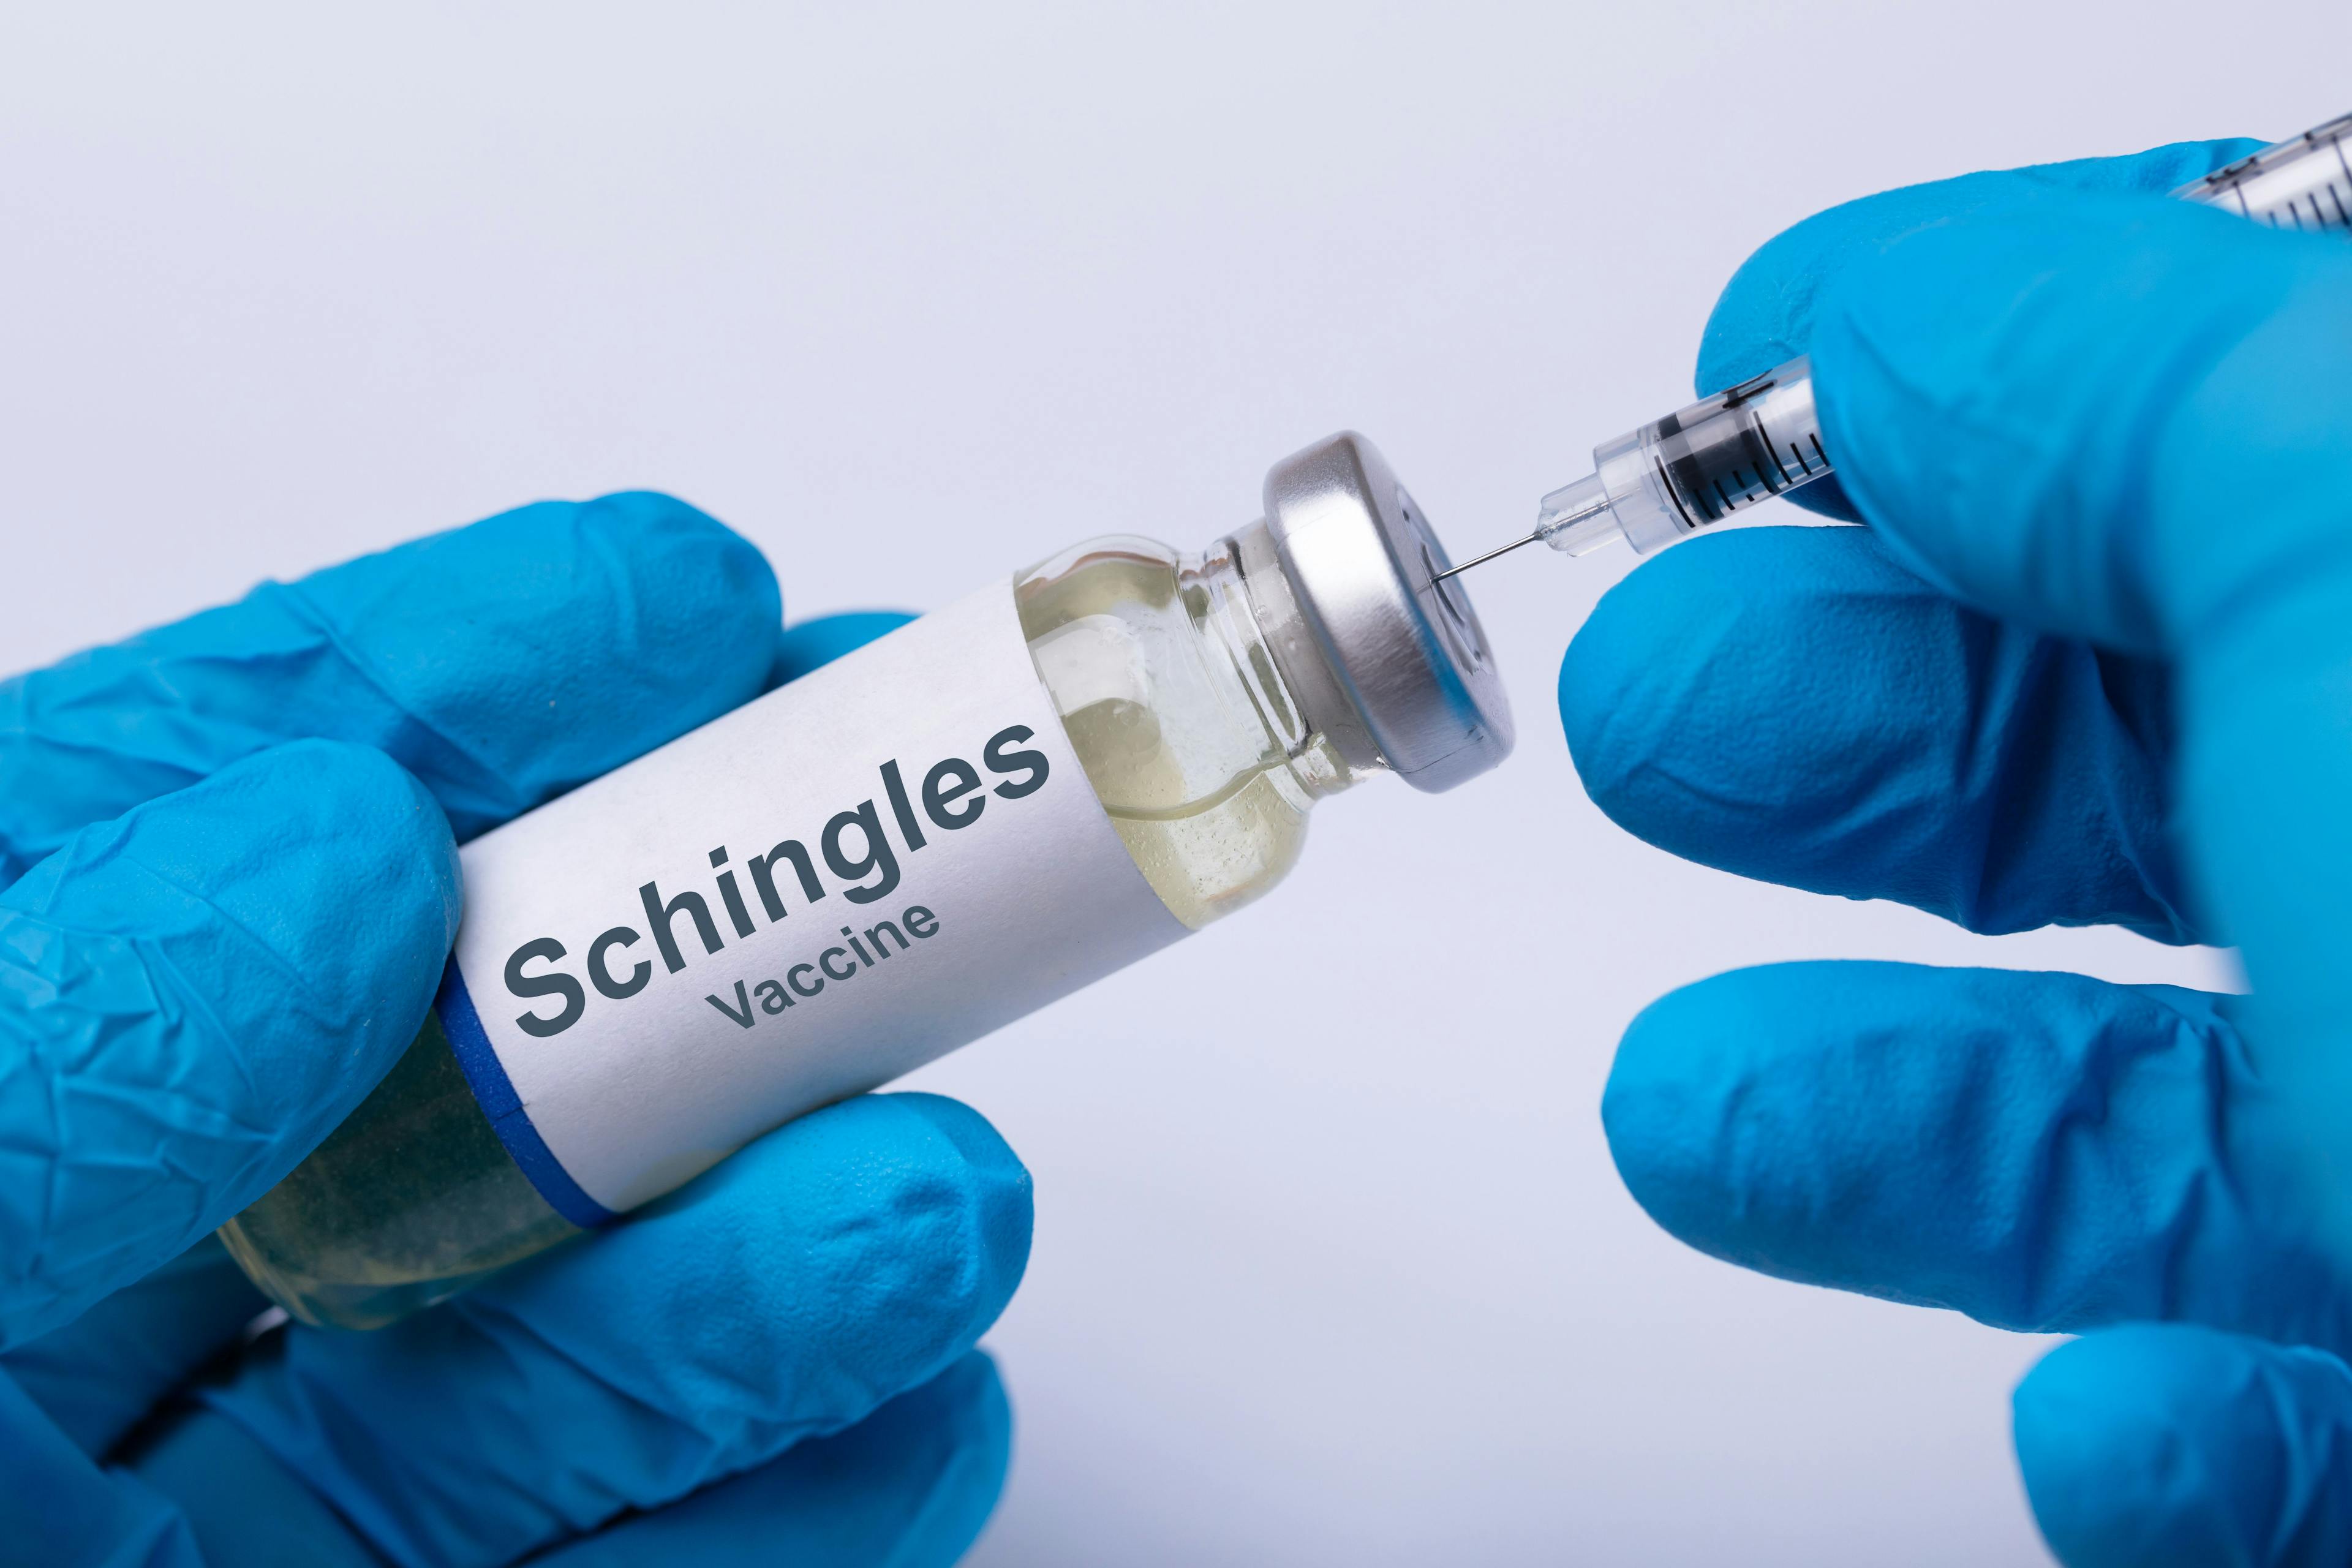 Doctor Filling Shingles Vaccine Syringe - Image credit: Andrey Popov | stock.adobe.com